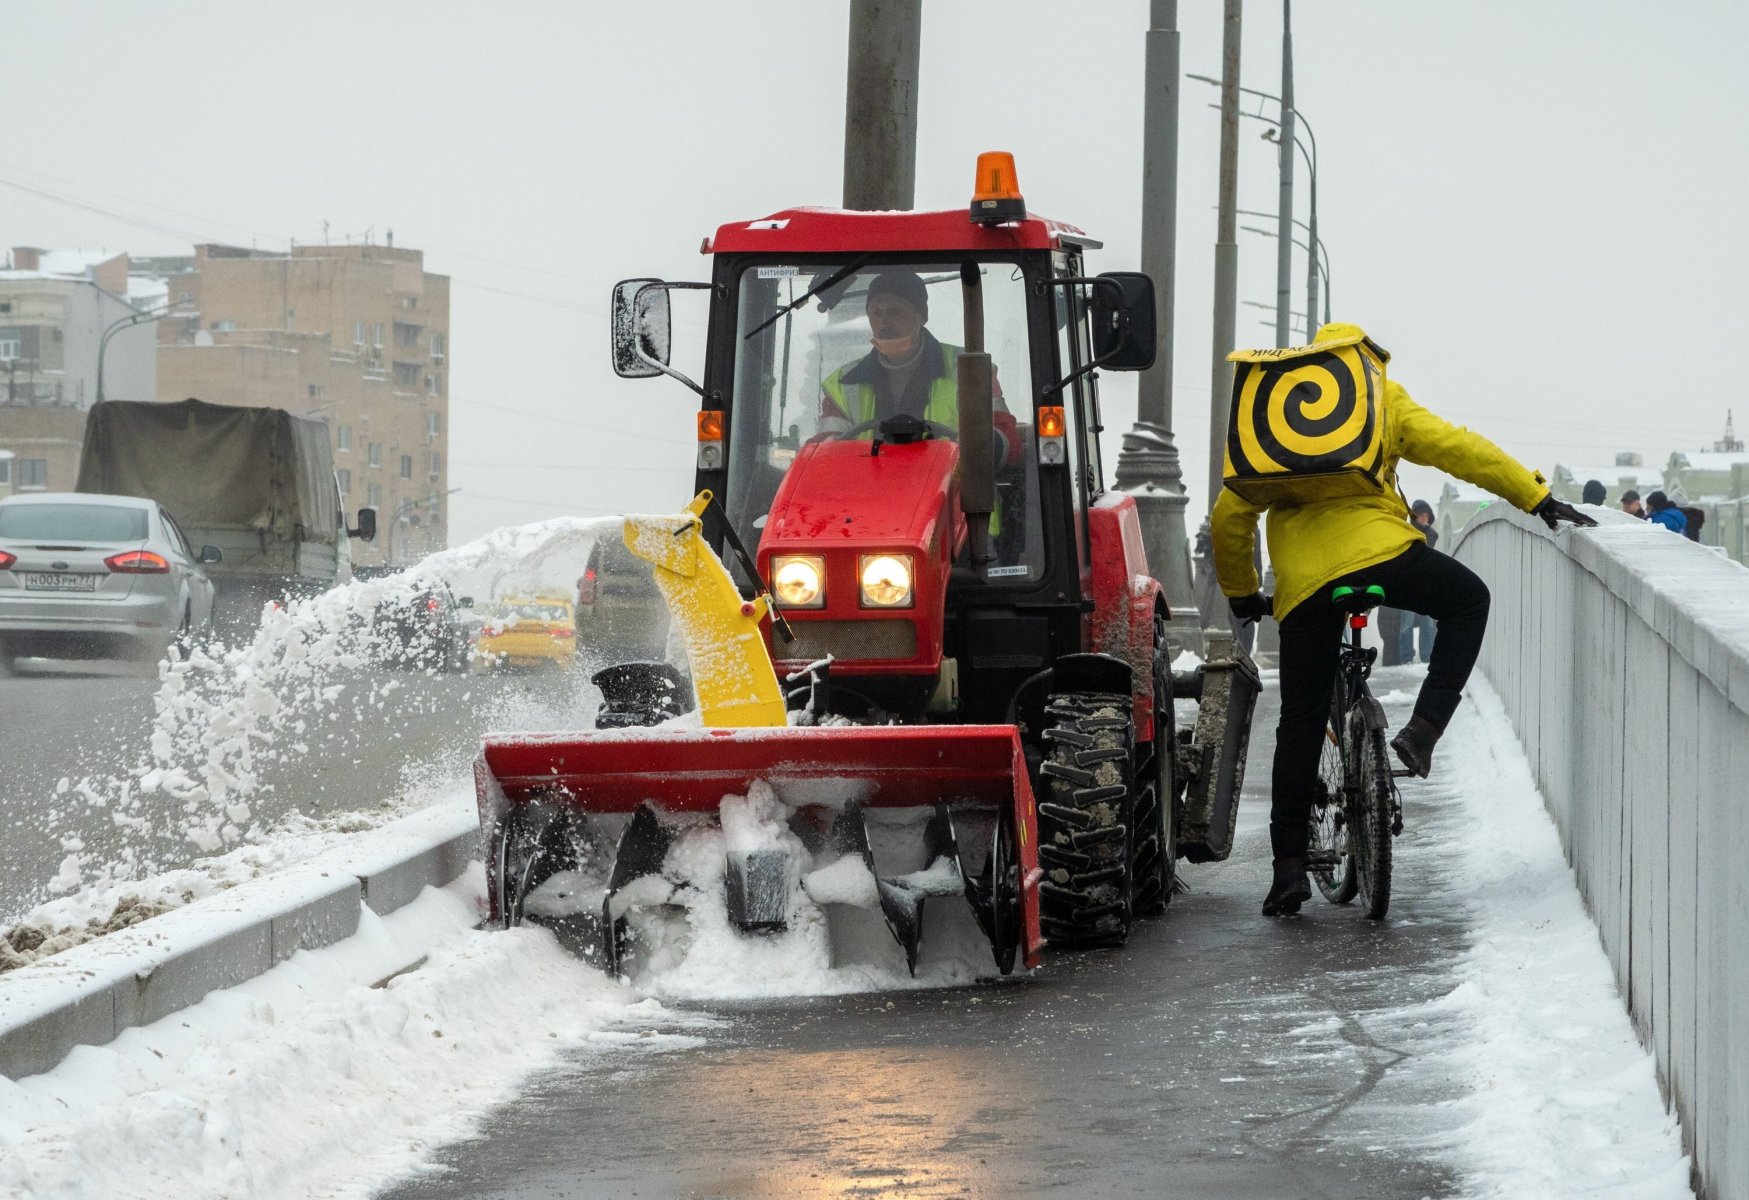 Минтранс Подмосковья призывает отложить поездки на личном транспорте из-за снегопада